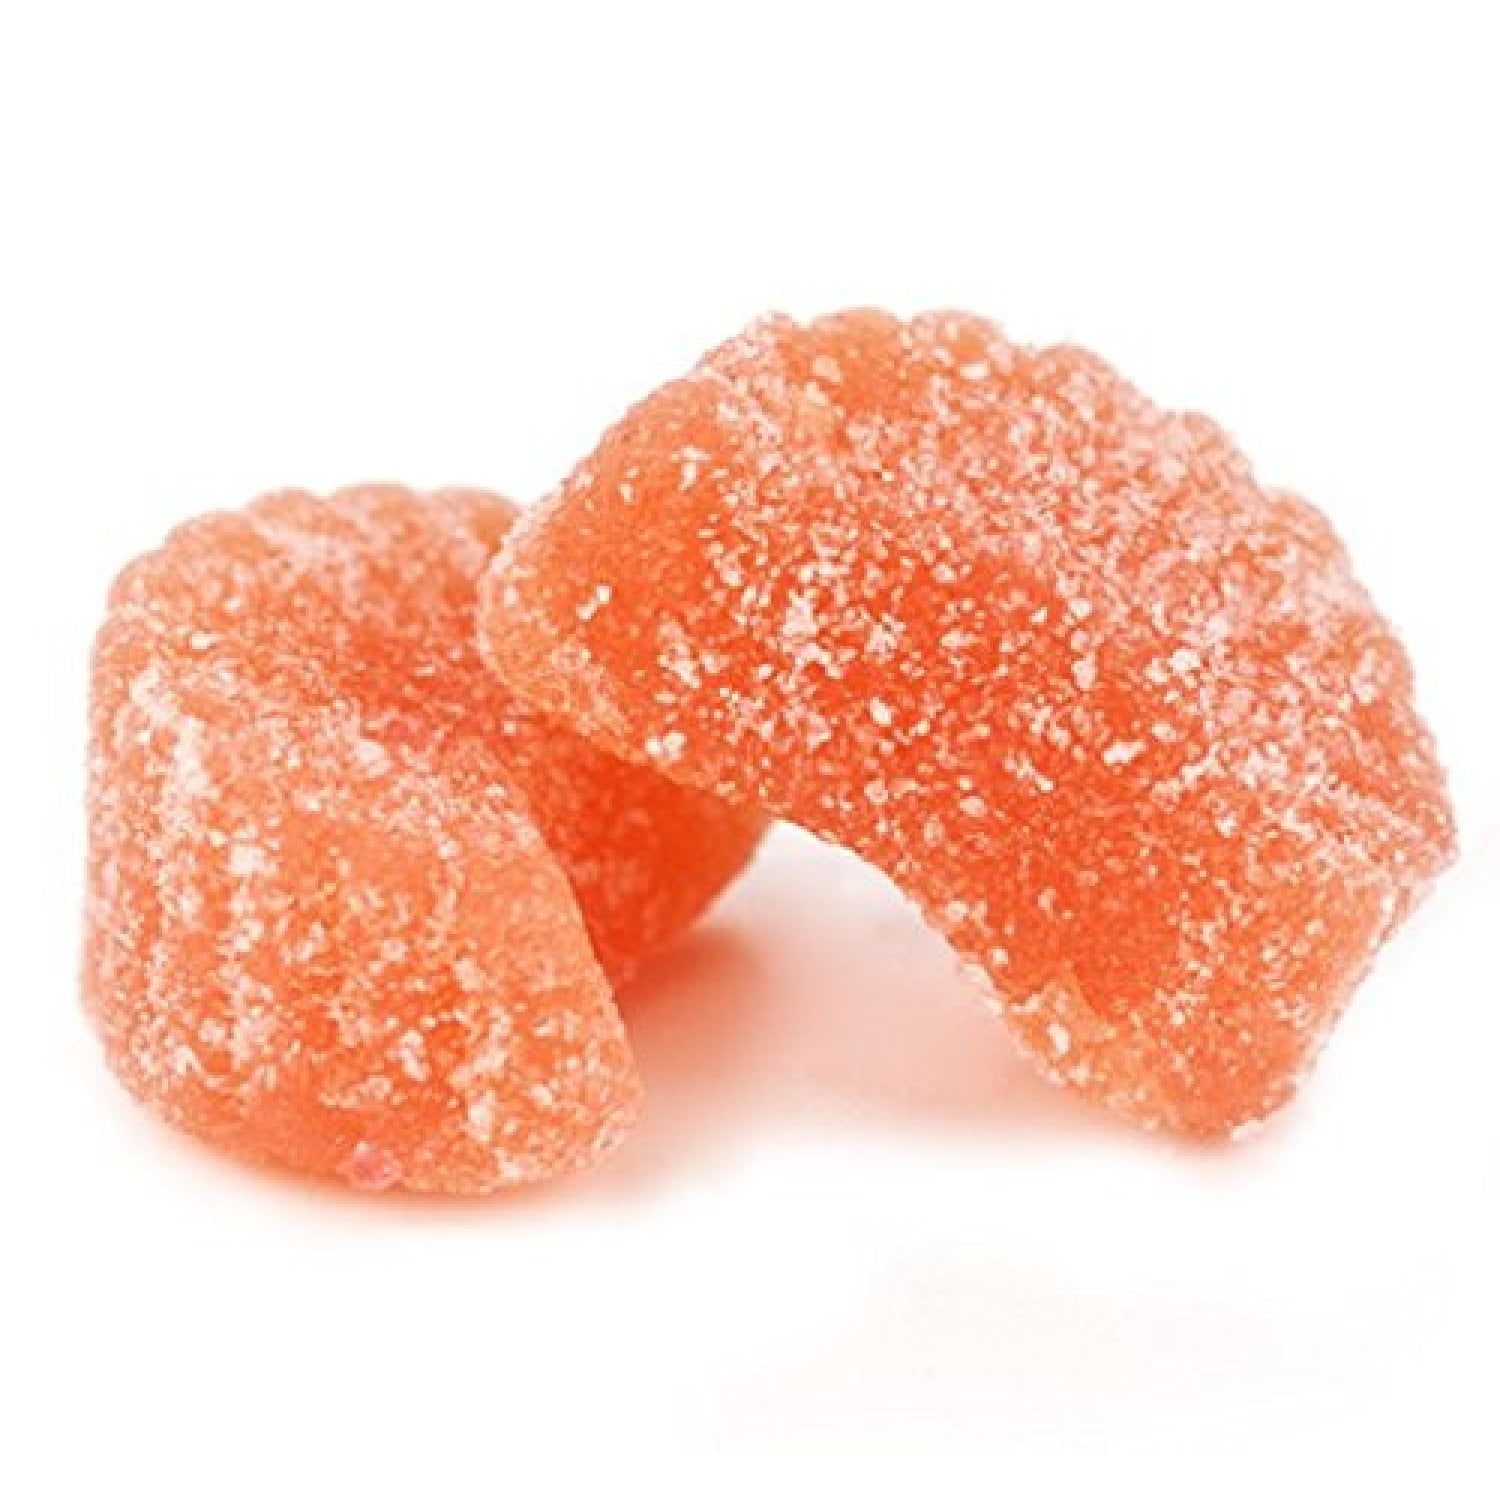 Fruit Slices Candy - Orange [5LB Bag]